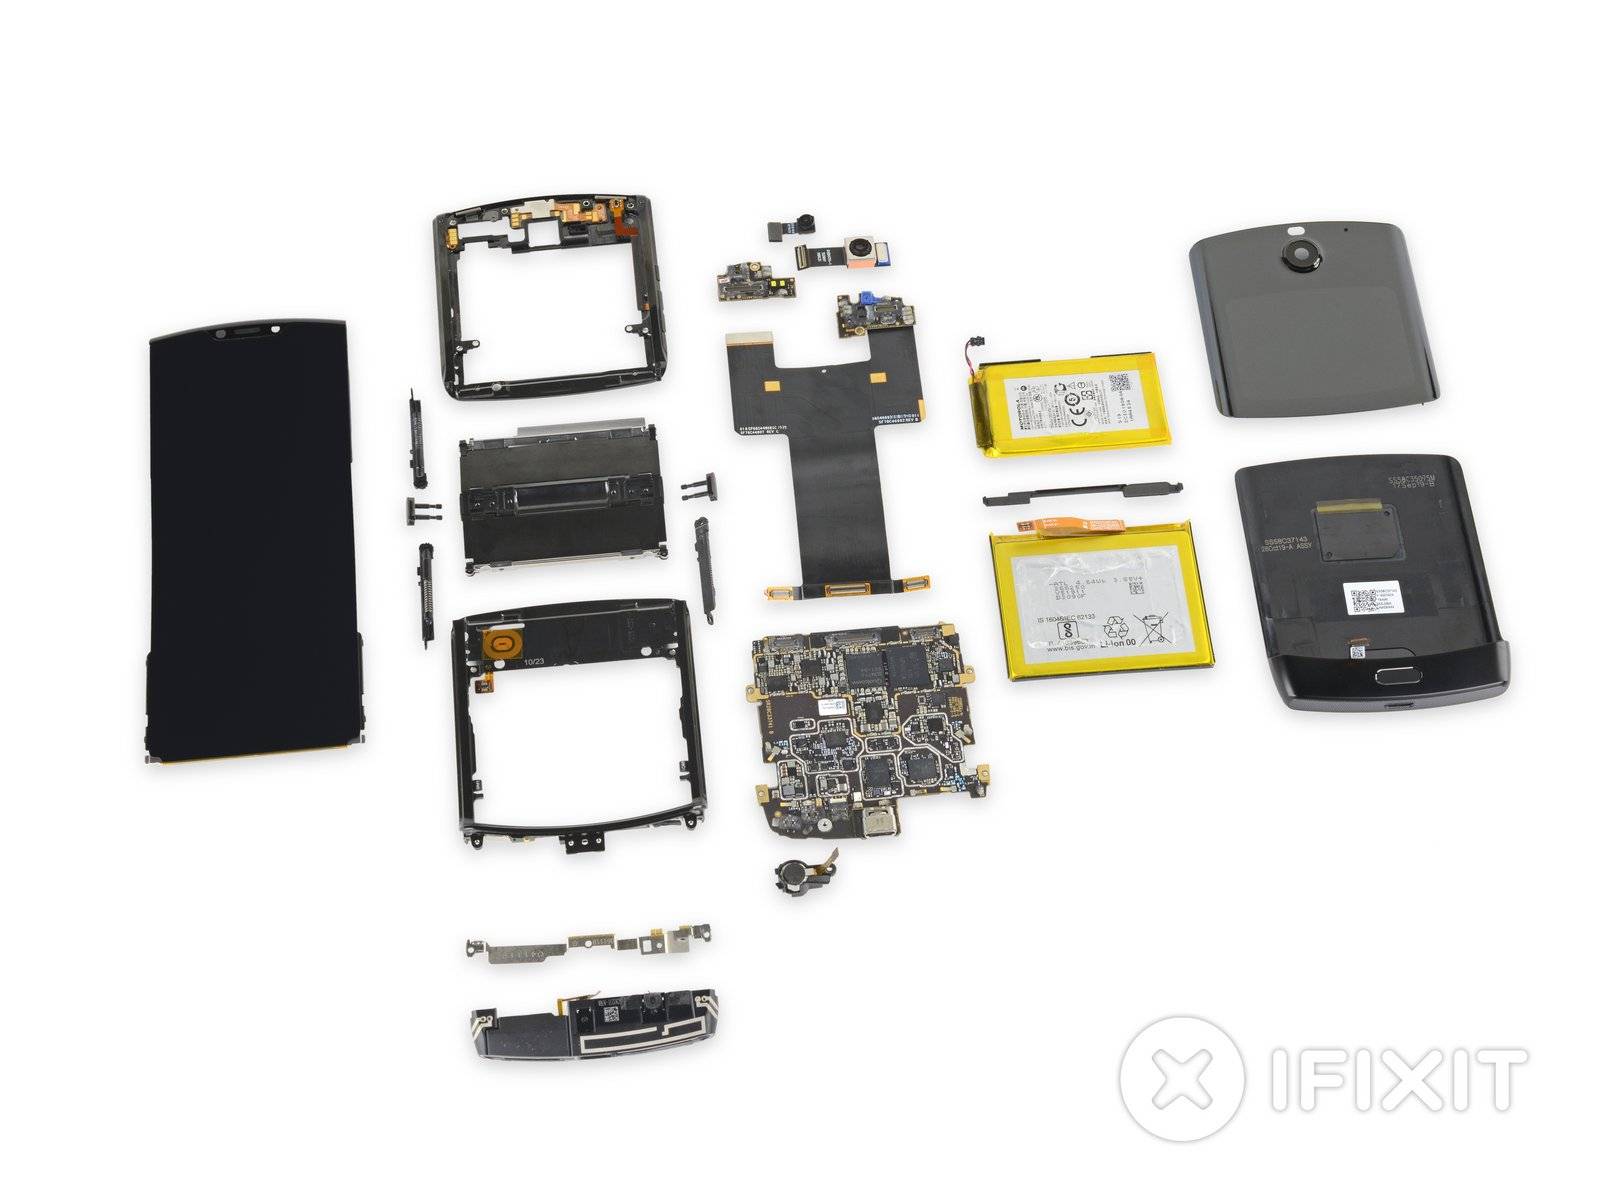 Разбор Motorola Razr показал, насколько безумно сложными могут быть складные телефоны